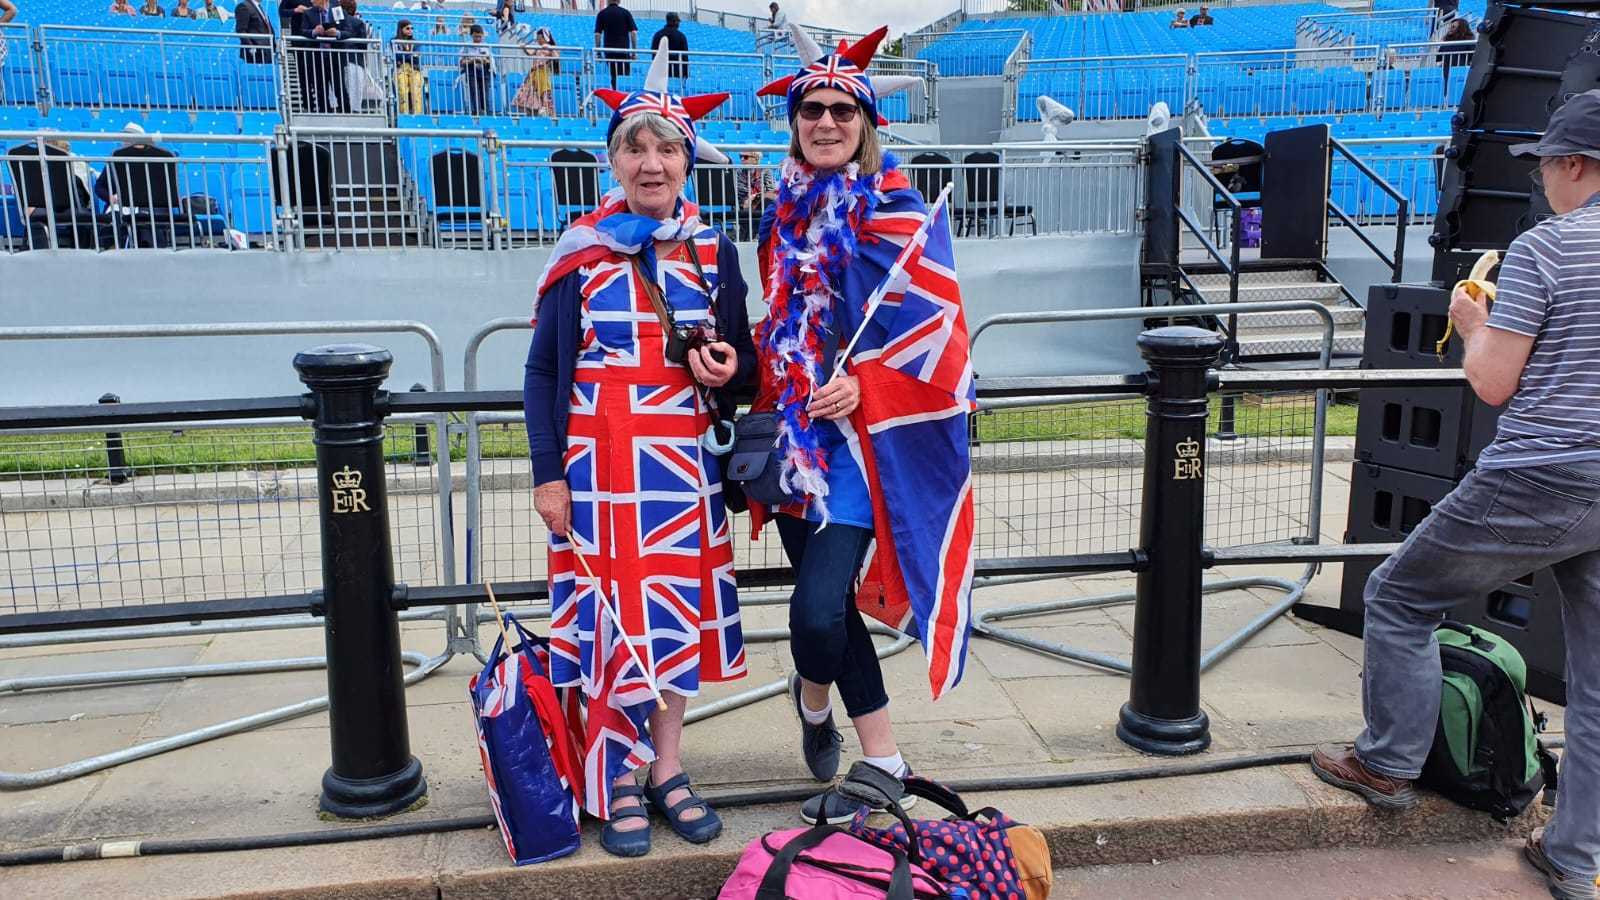 Moira Smith und Sally Conway wurden am 2. Juni in ihrem vollen Union-Jack-Kostüm in der Nähe des Einkaufszentrums fotografiert.